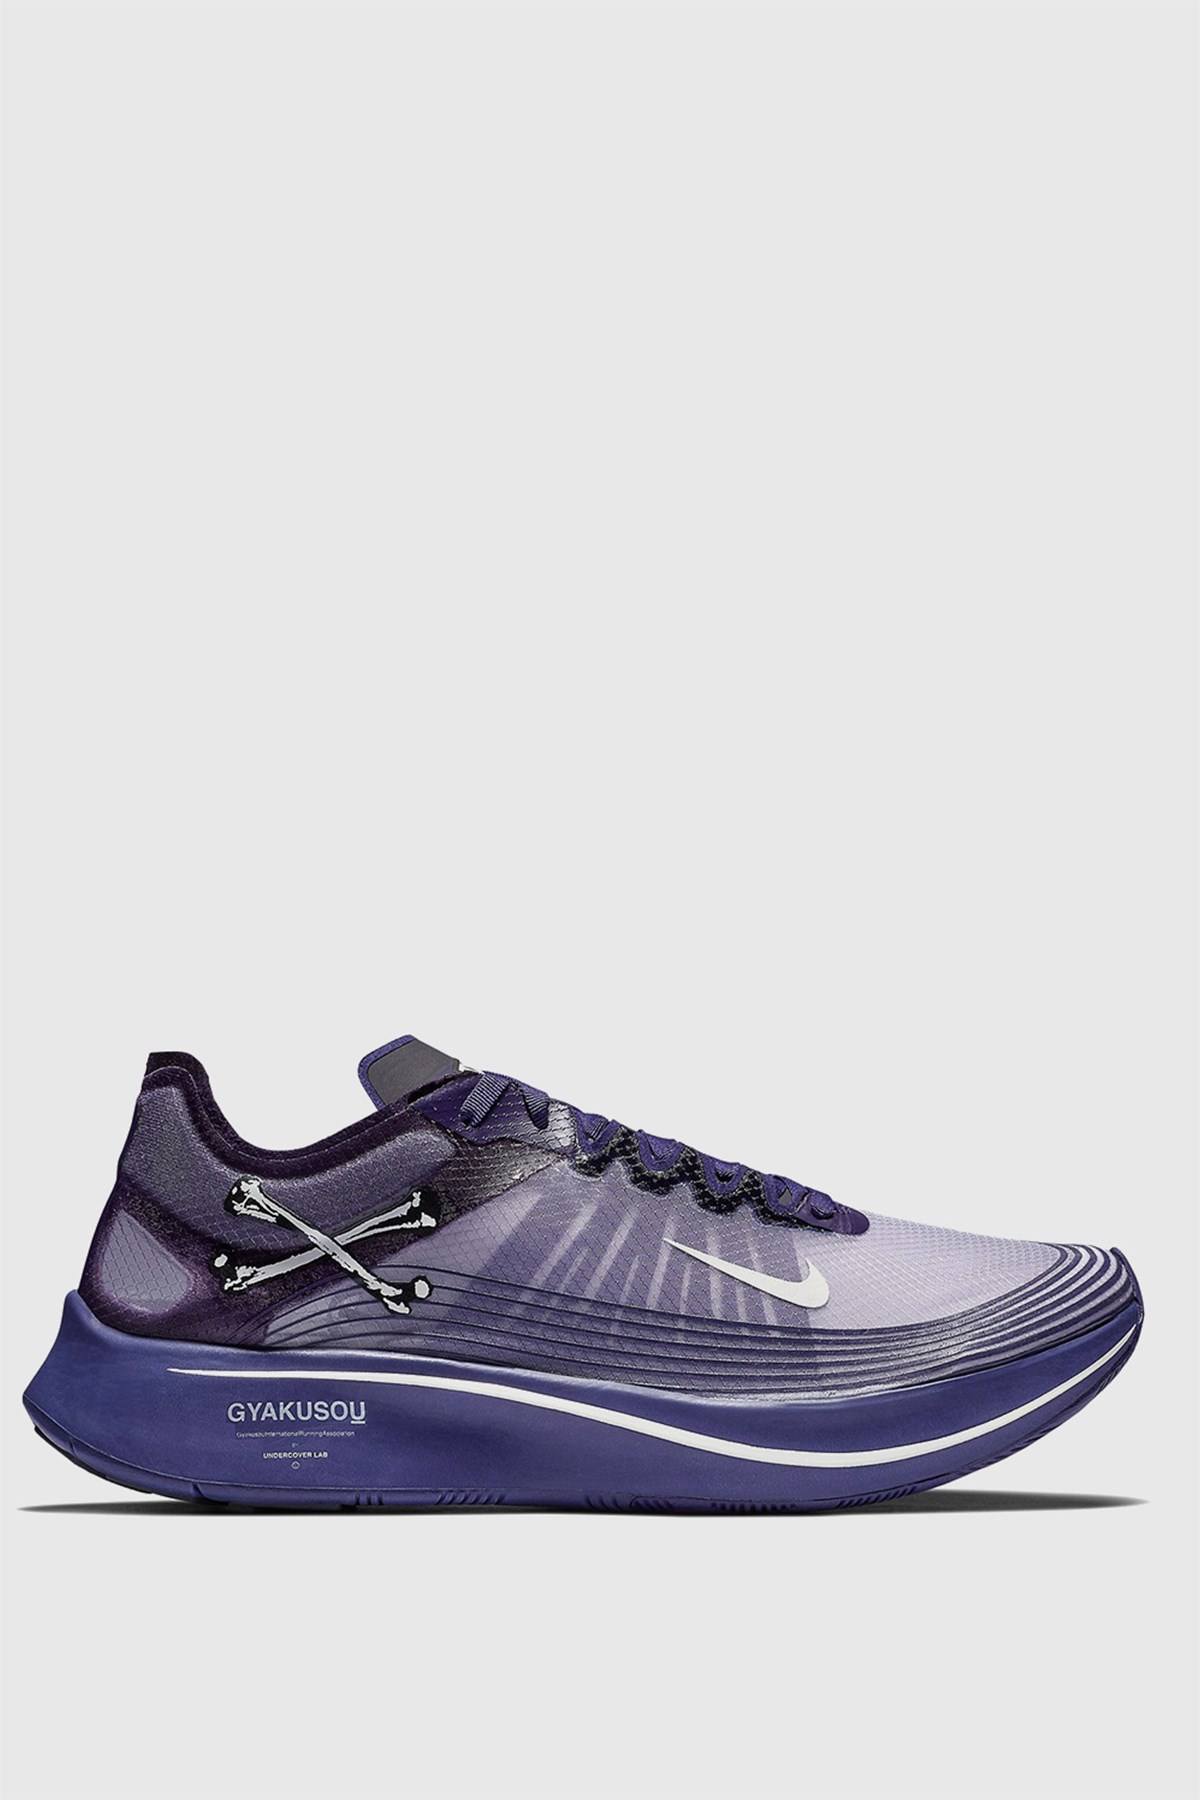 Nike Gyakusou Zoom Fly Ink/dark grey (500) |